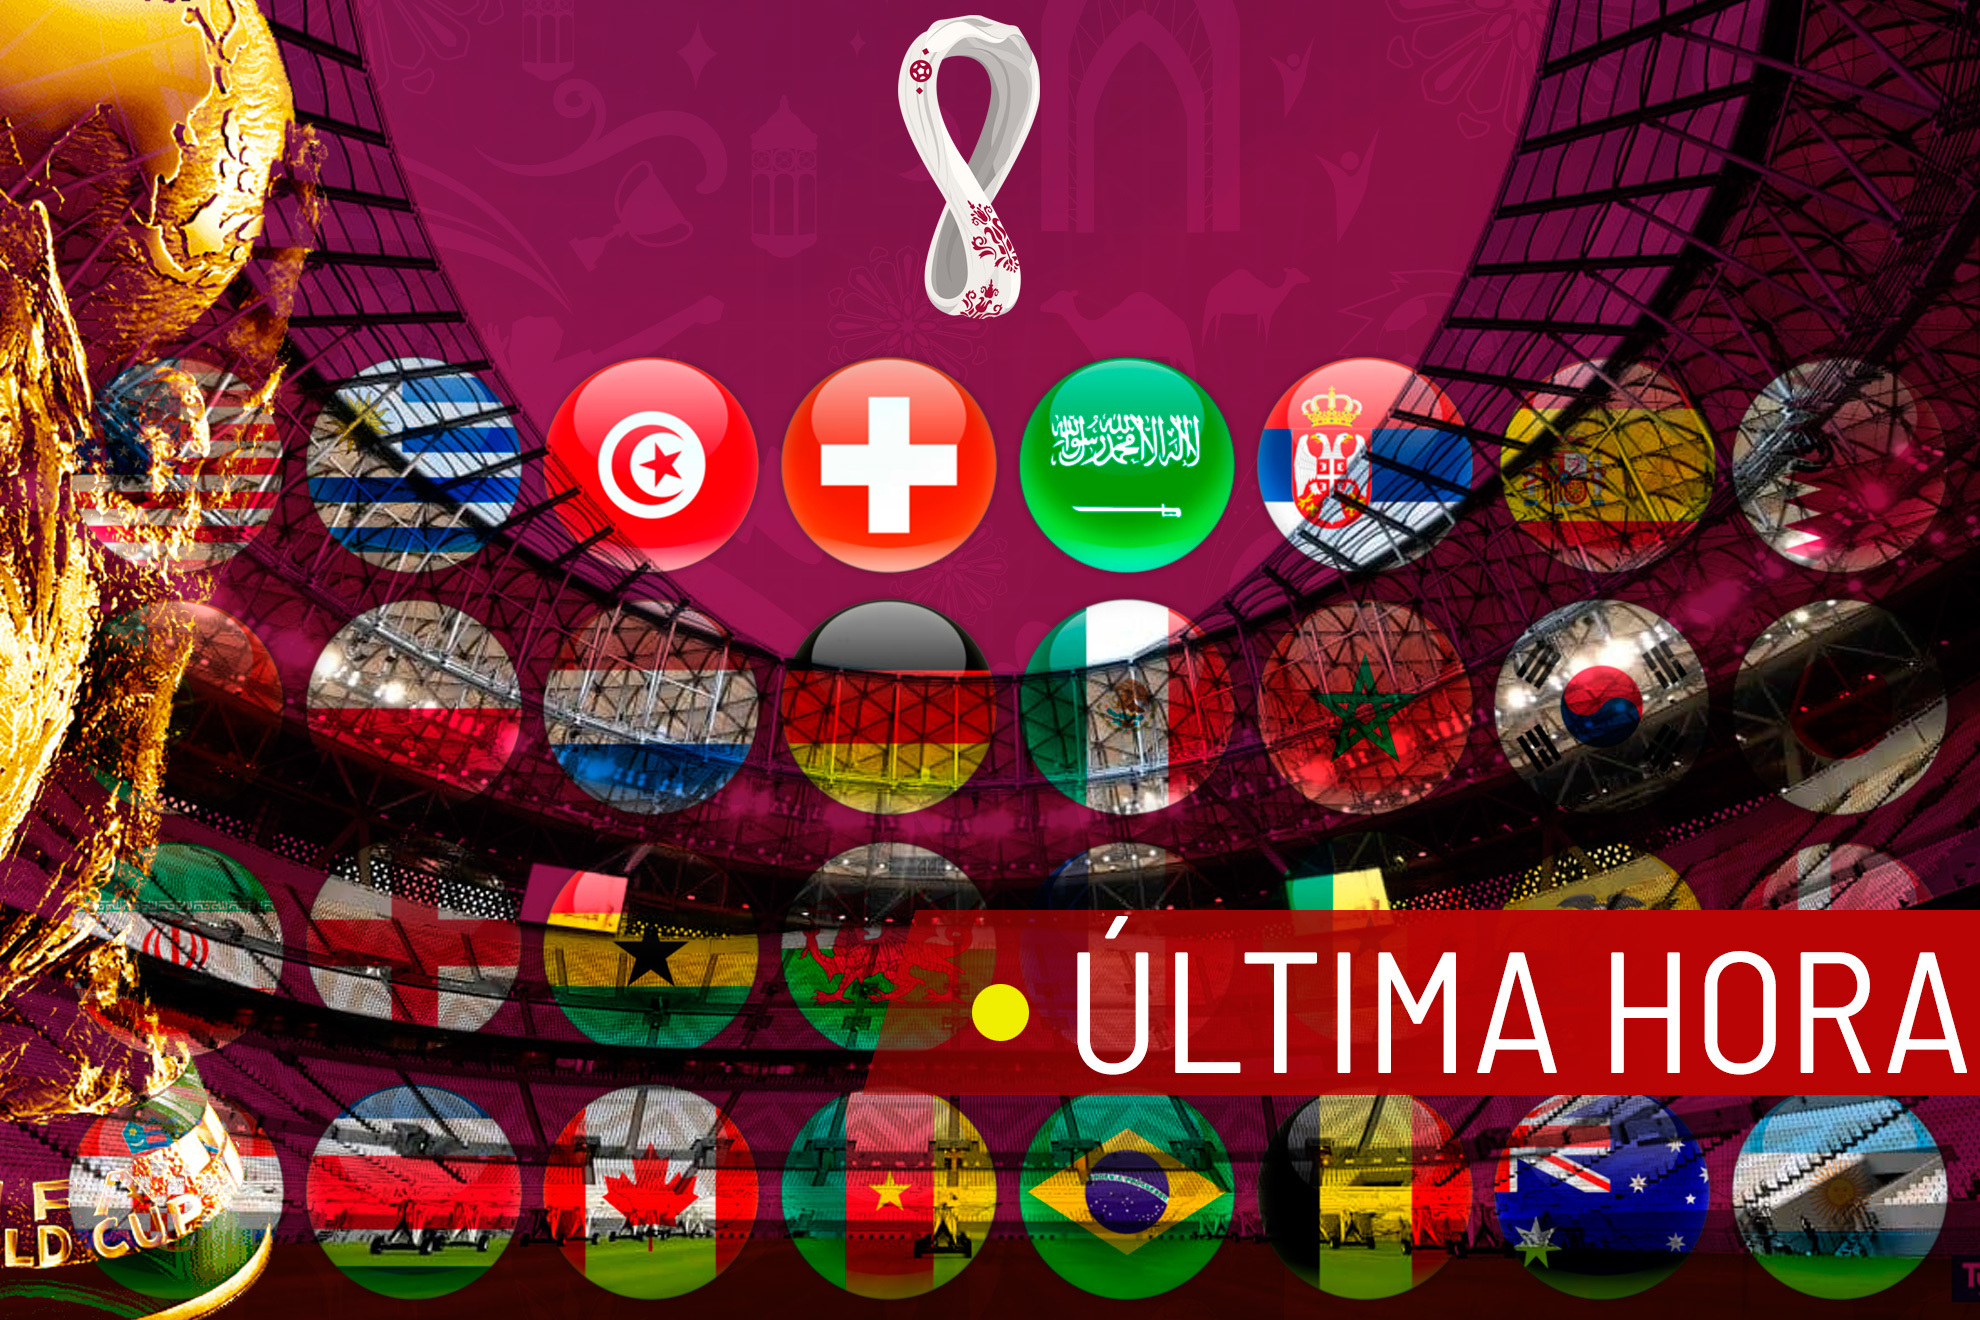 Mundial Qatar 2022, en directo | Partidos, noticias y última hora de la Copa del Mundo hoy en vivo